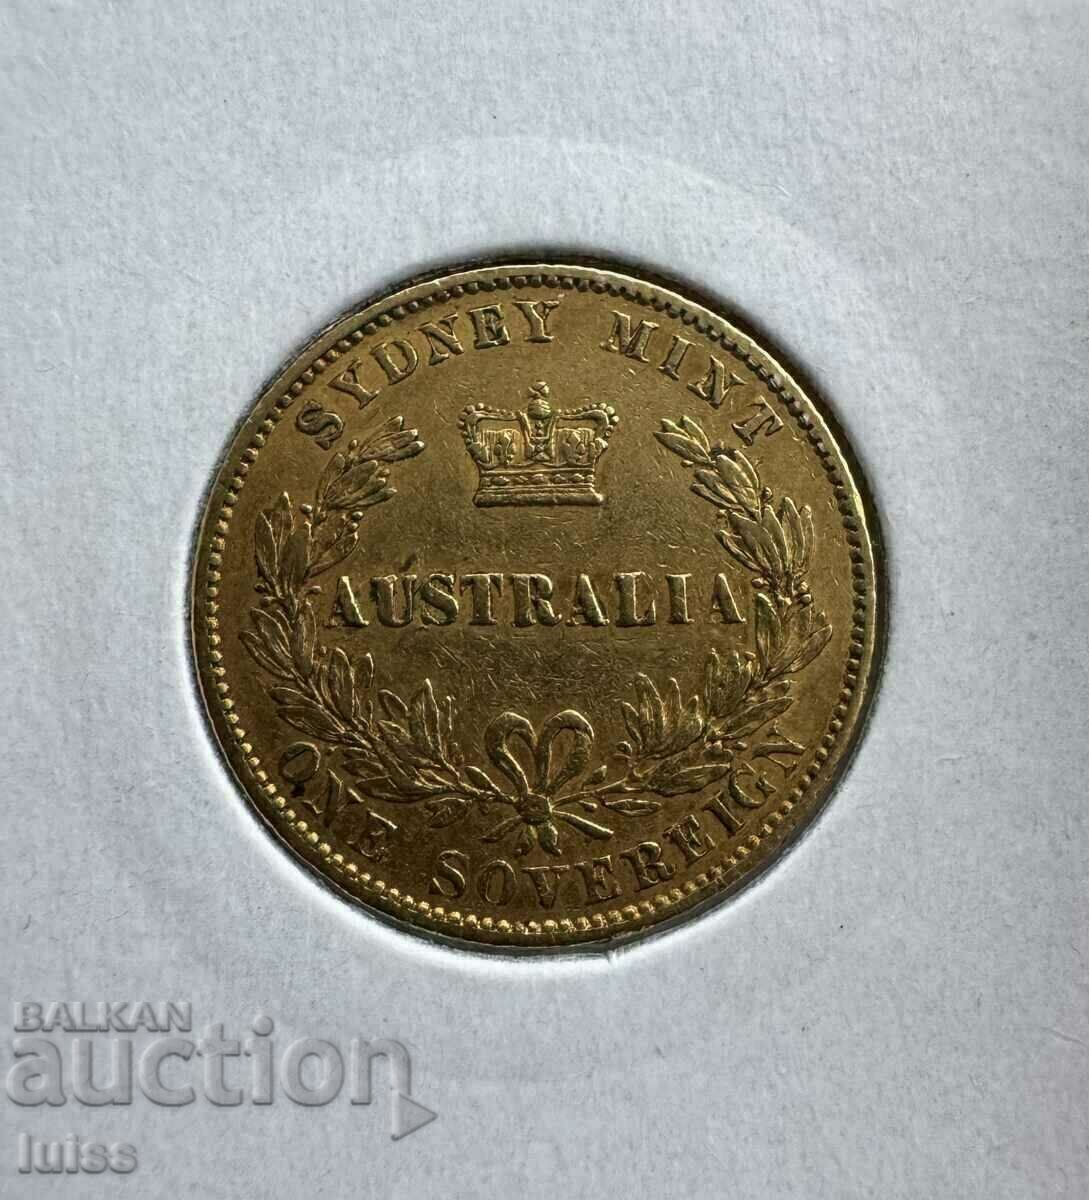 Χρυσό νόμισμα Australia 1 Sovereign 1870. Βικτώρια